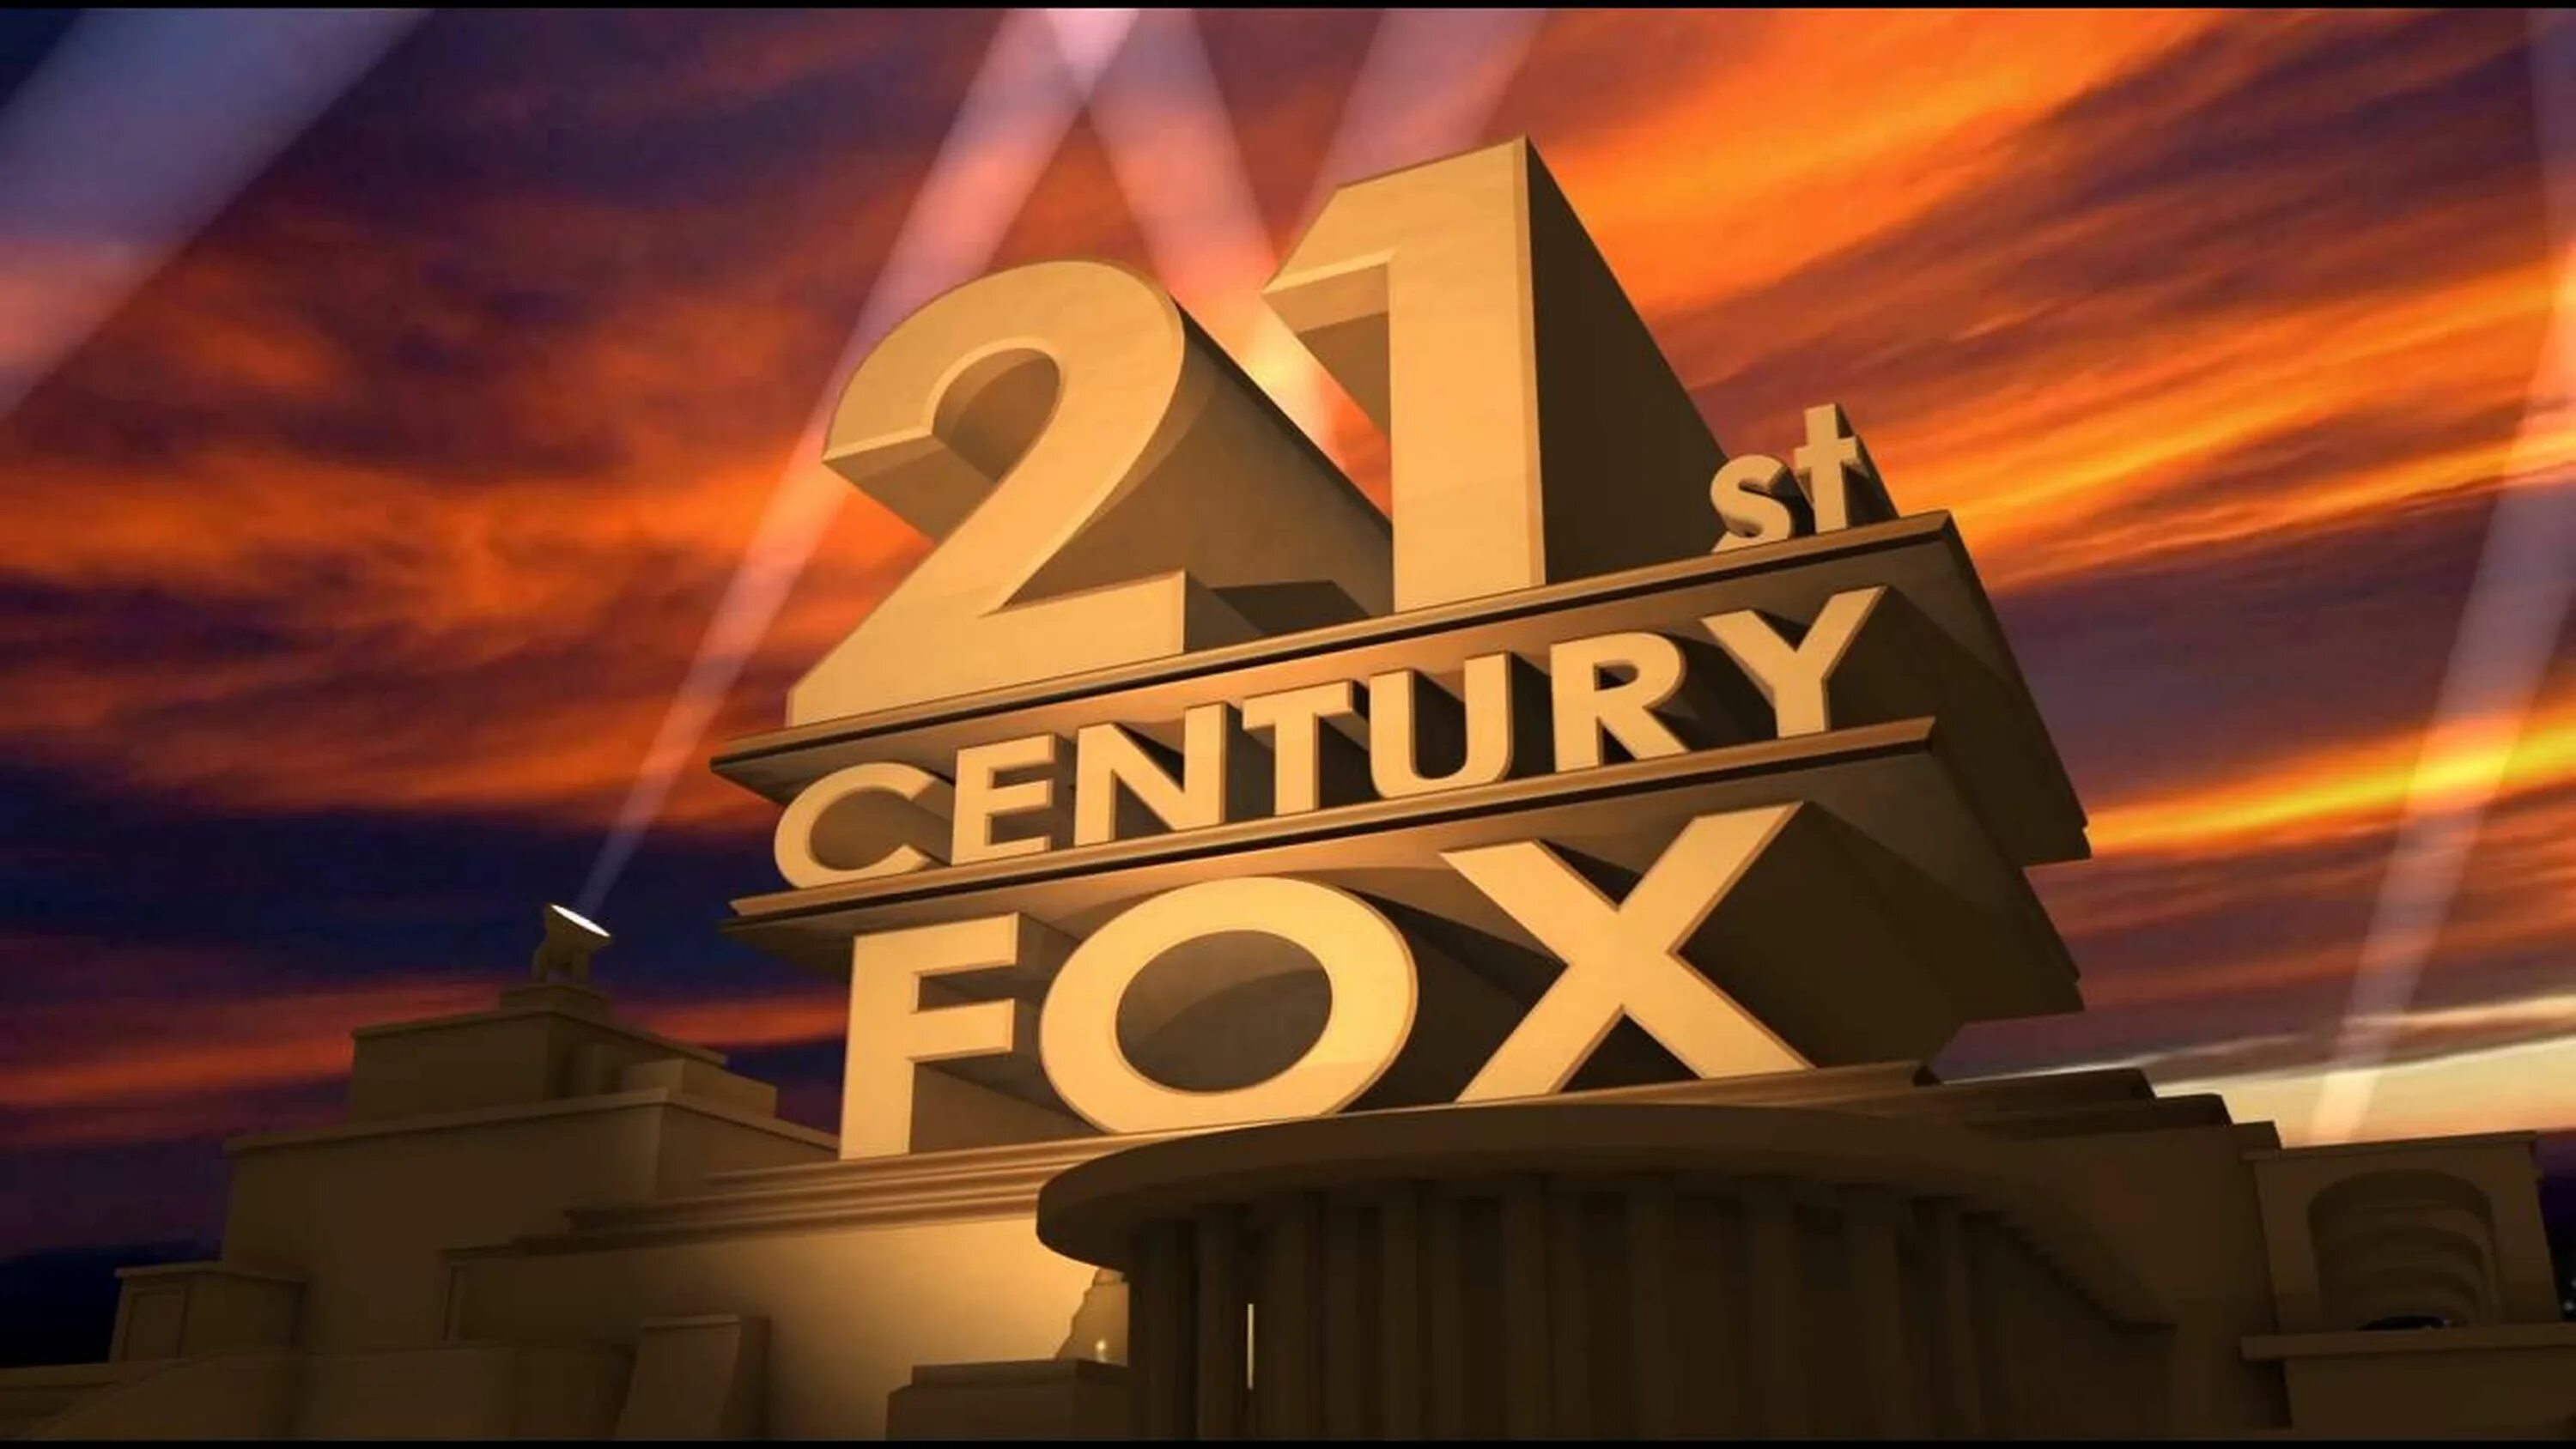 Walt Disney Fox 21 Century. 21st Century Fox проекты. С юбилеем 20 век Фокс. Заставка с юбилеем. Видео поздравление 20 лет